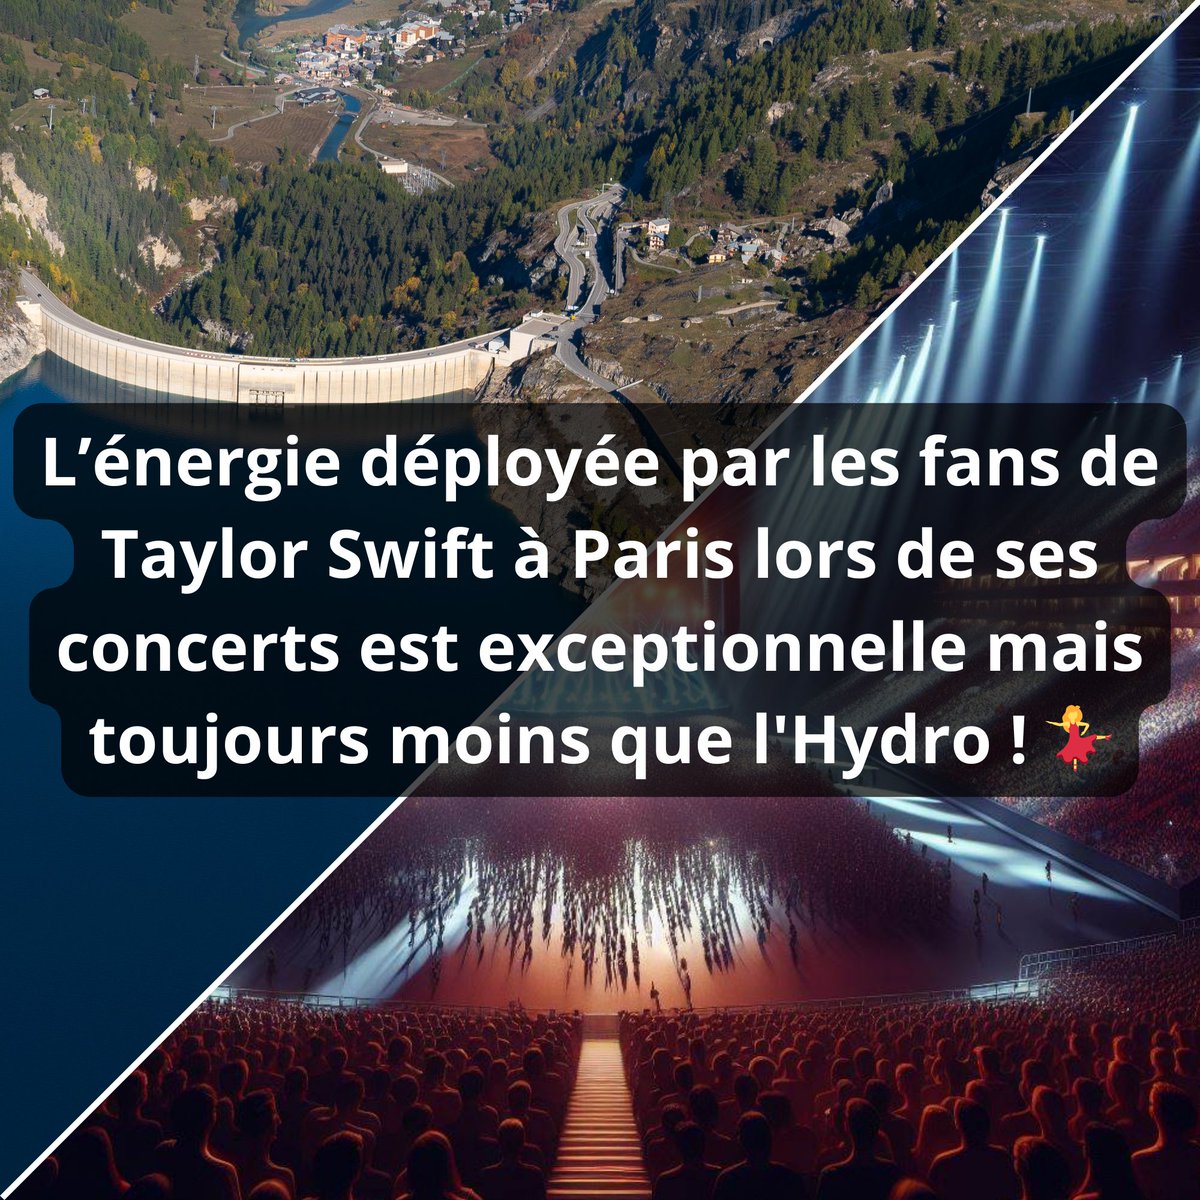 The Hydro Tour 🎤

Il faudrait près de 2,87 millions de concerts de Taylor Swift pour égaler la production annuelle d’hydroélectricité d’EDF en France. 🇫🇷

Savez-vous comment nous en sommes arrivés à ce résultat un brin tiré par les cheveux  ? 🤔

#ParisTSTheErastour #TaylorSwift